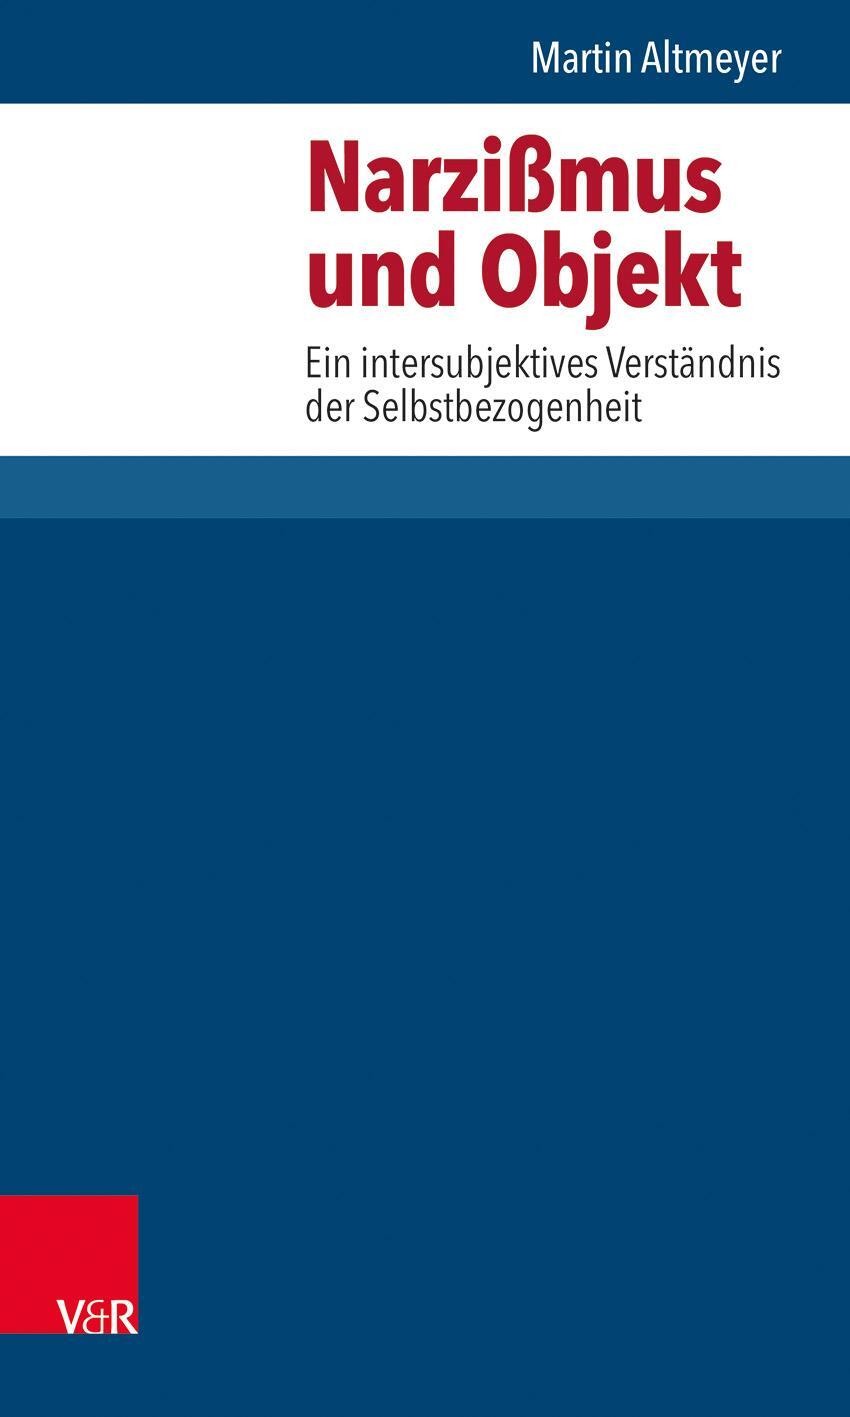 Narzissmus und Objekt - Altmeyer, Martin